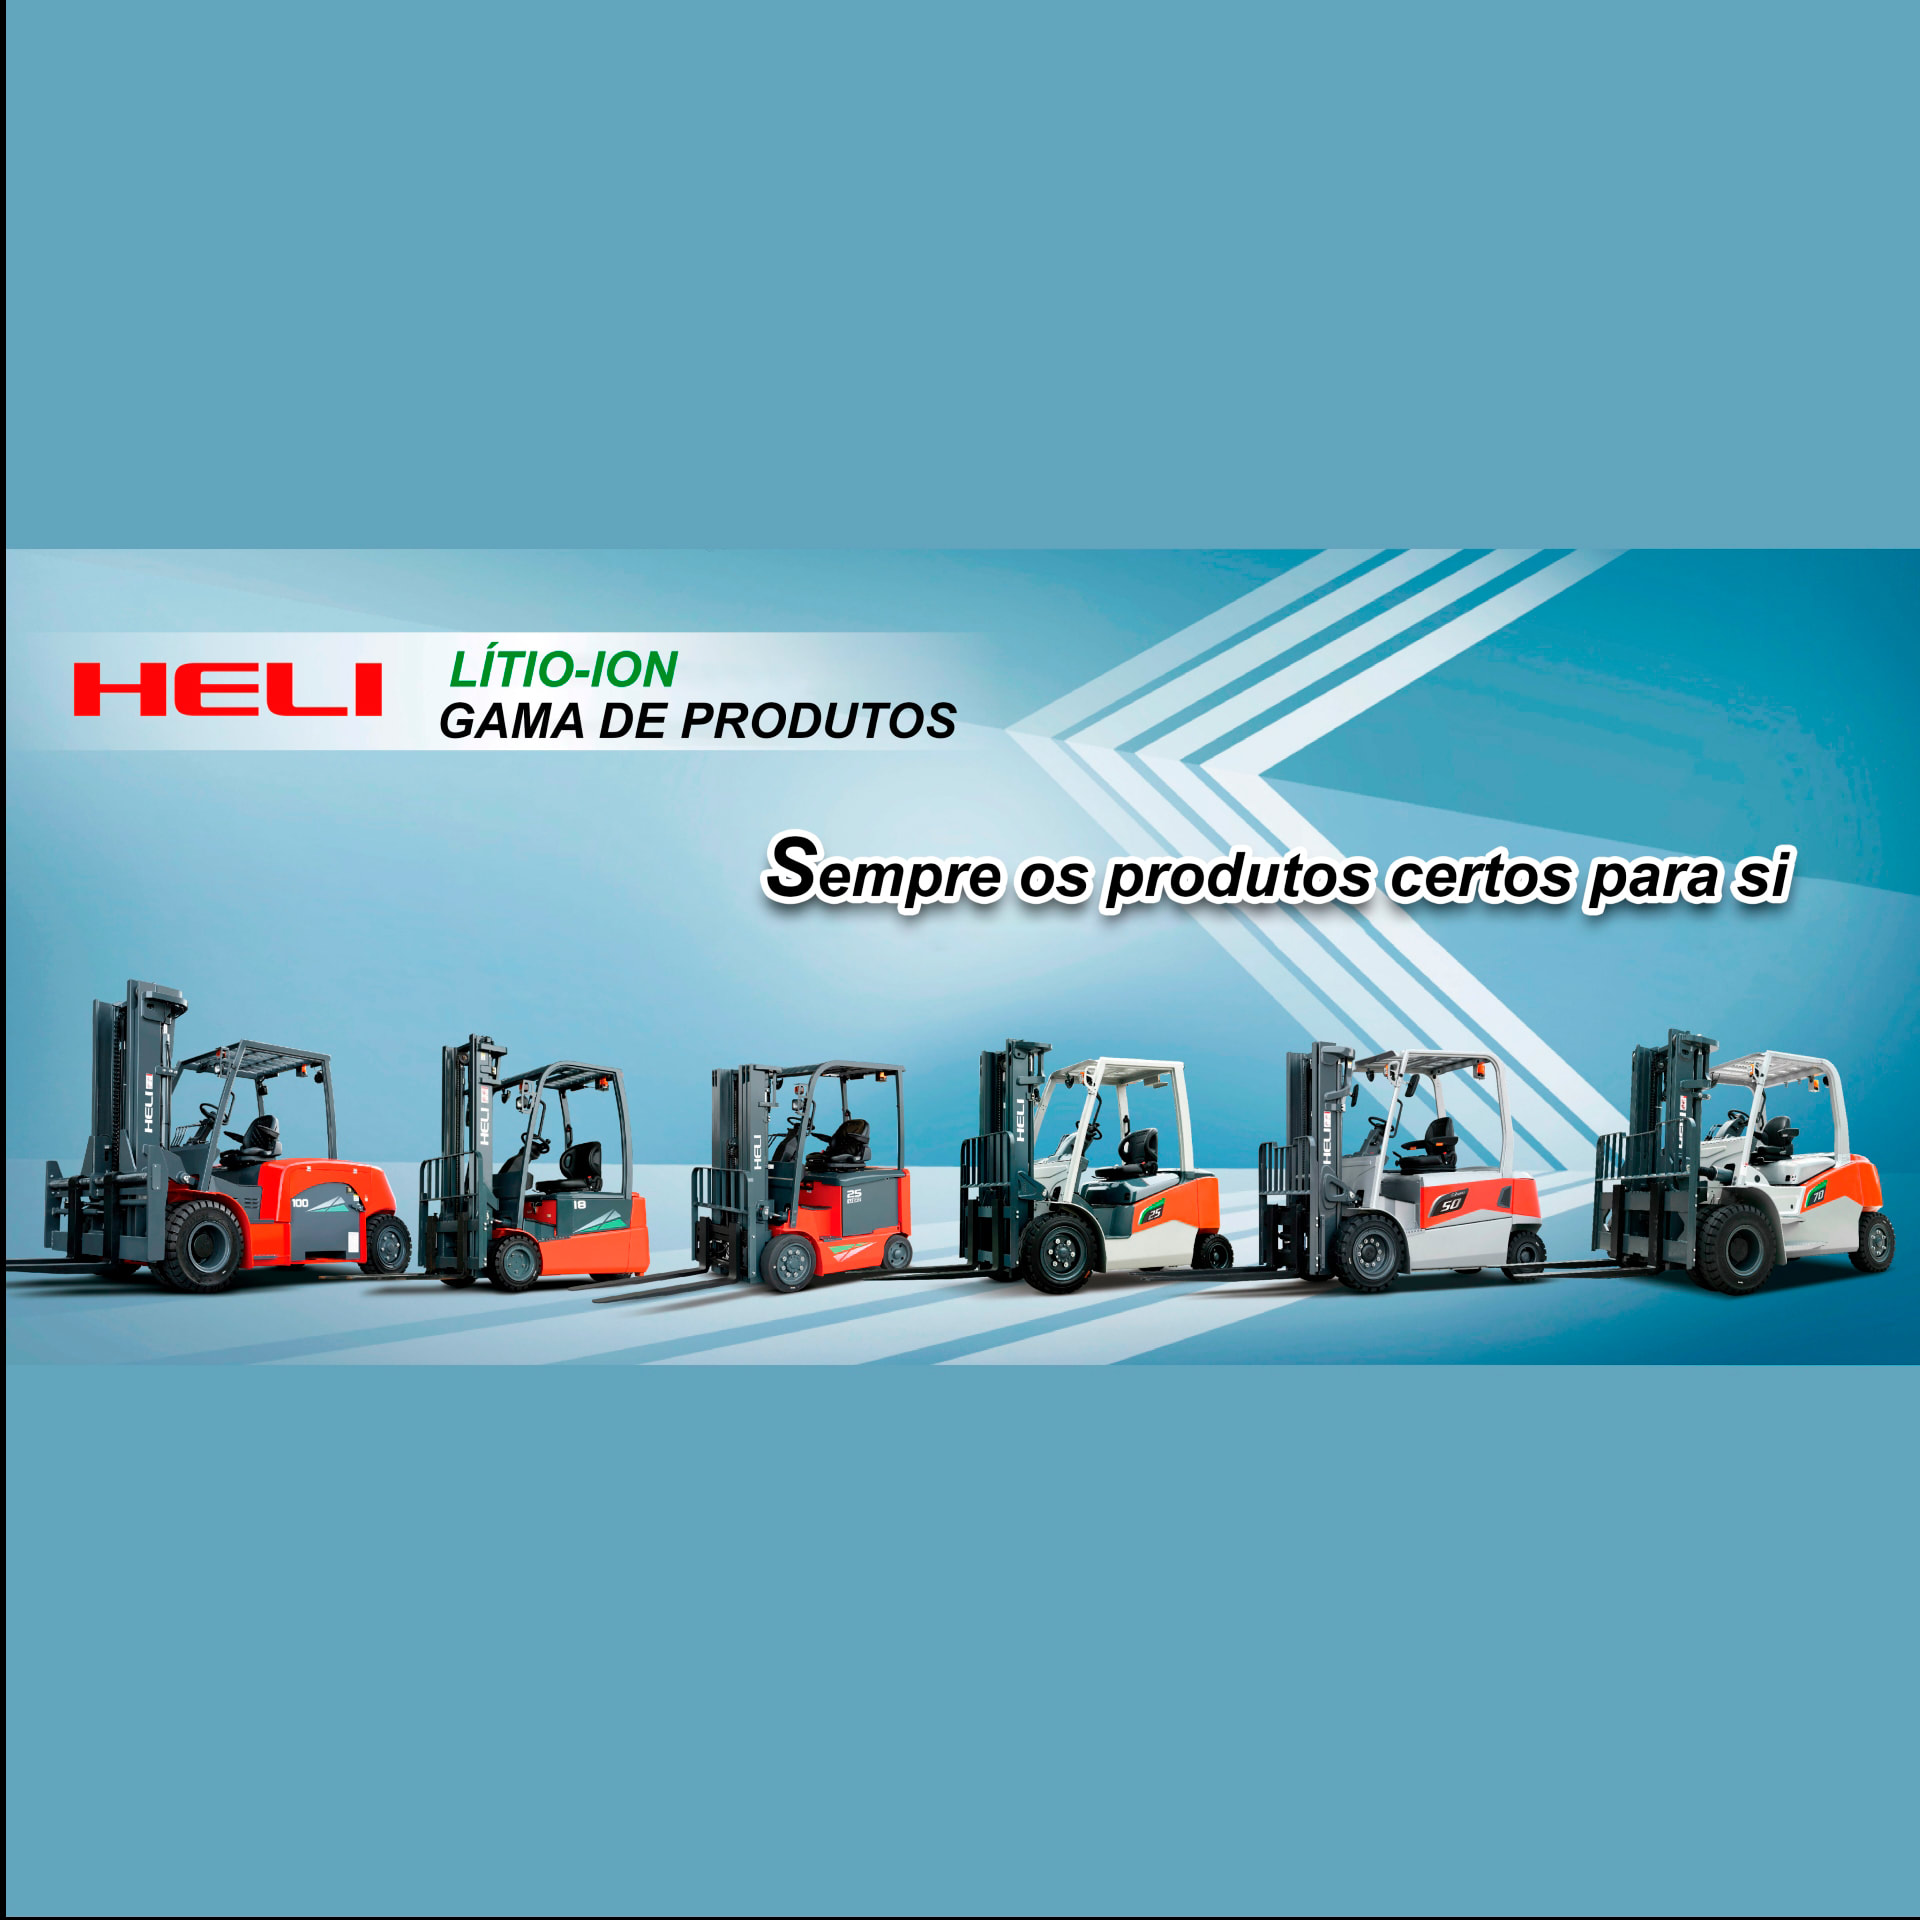 A Empizinhos juntamente com a Heli entrega os melhores produtos aos seus clientes.